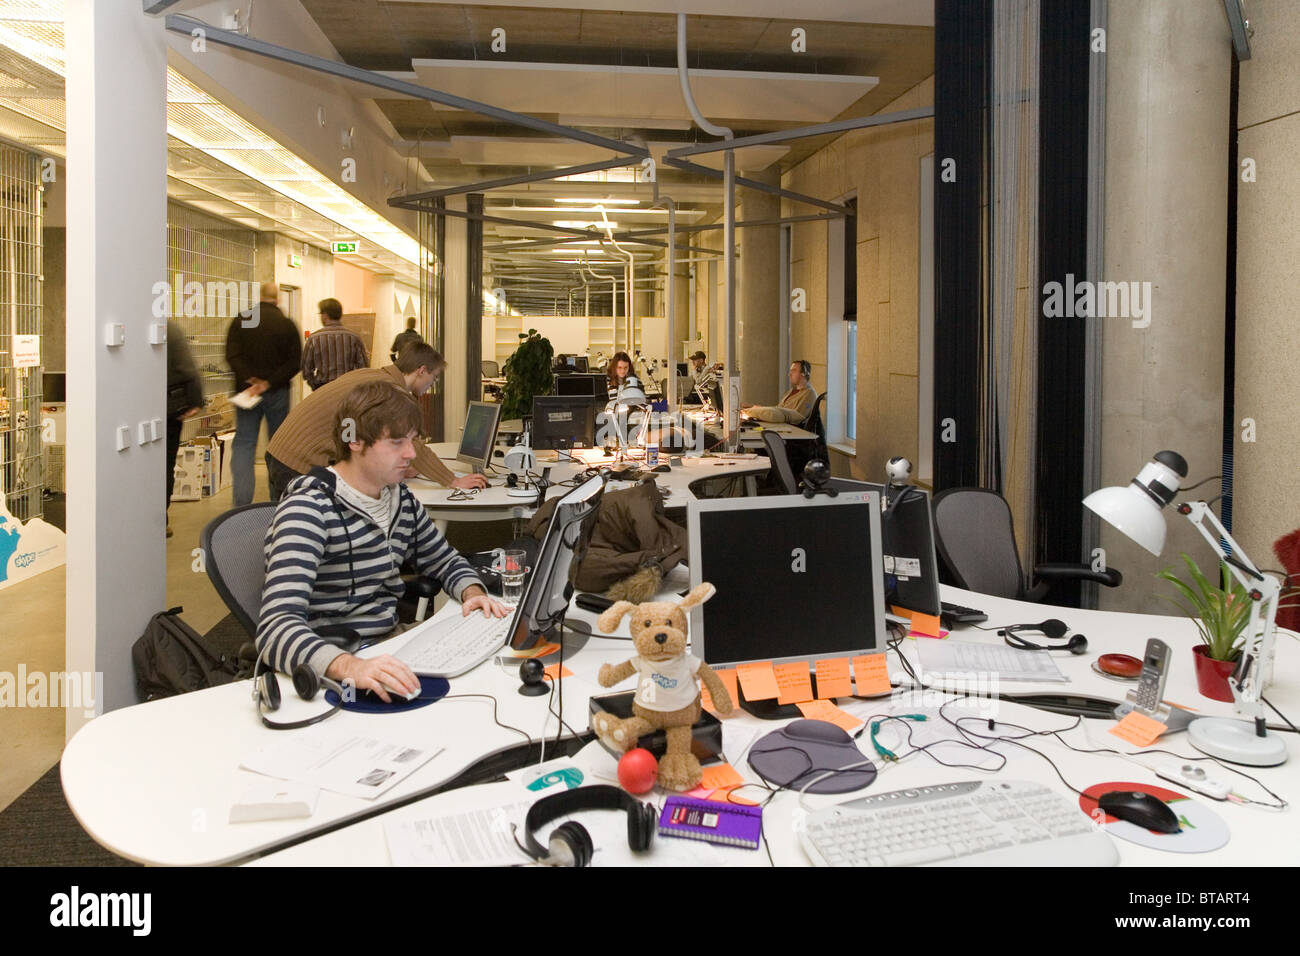 Skype Office in Tallinn, Estonia Stock Photo - Alamy